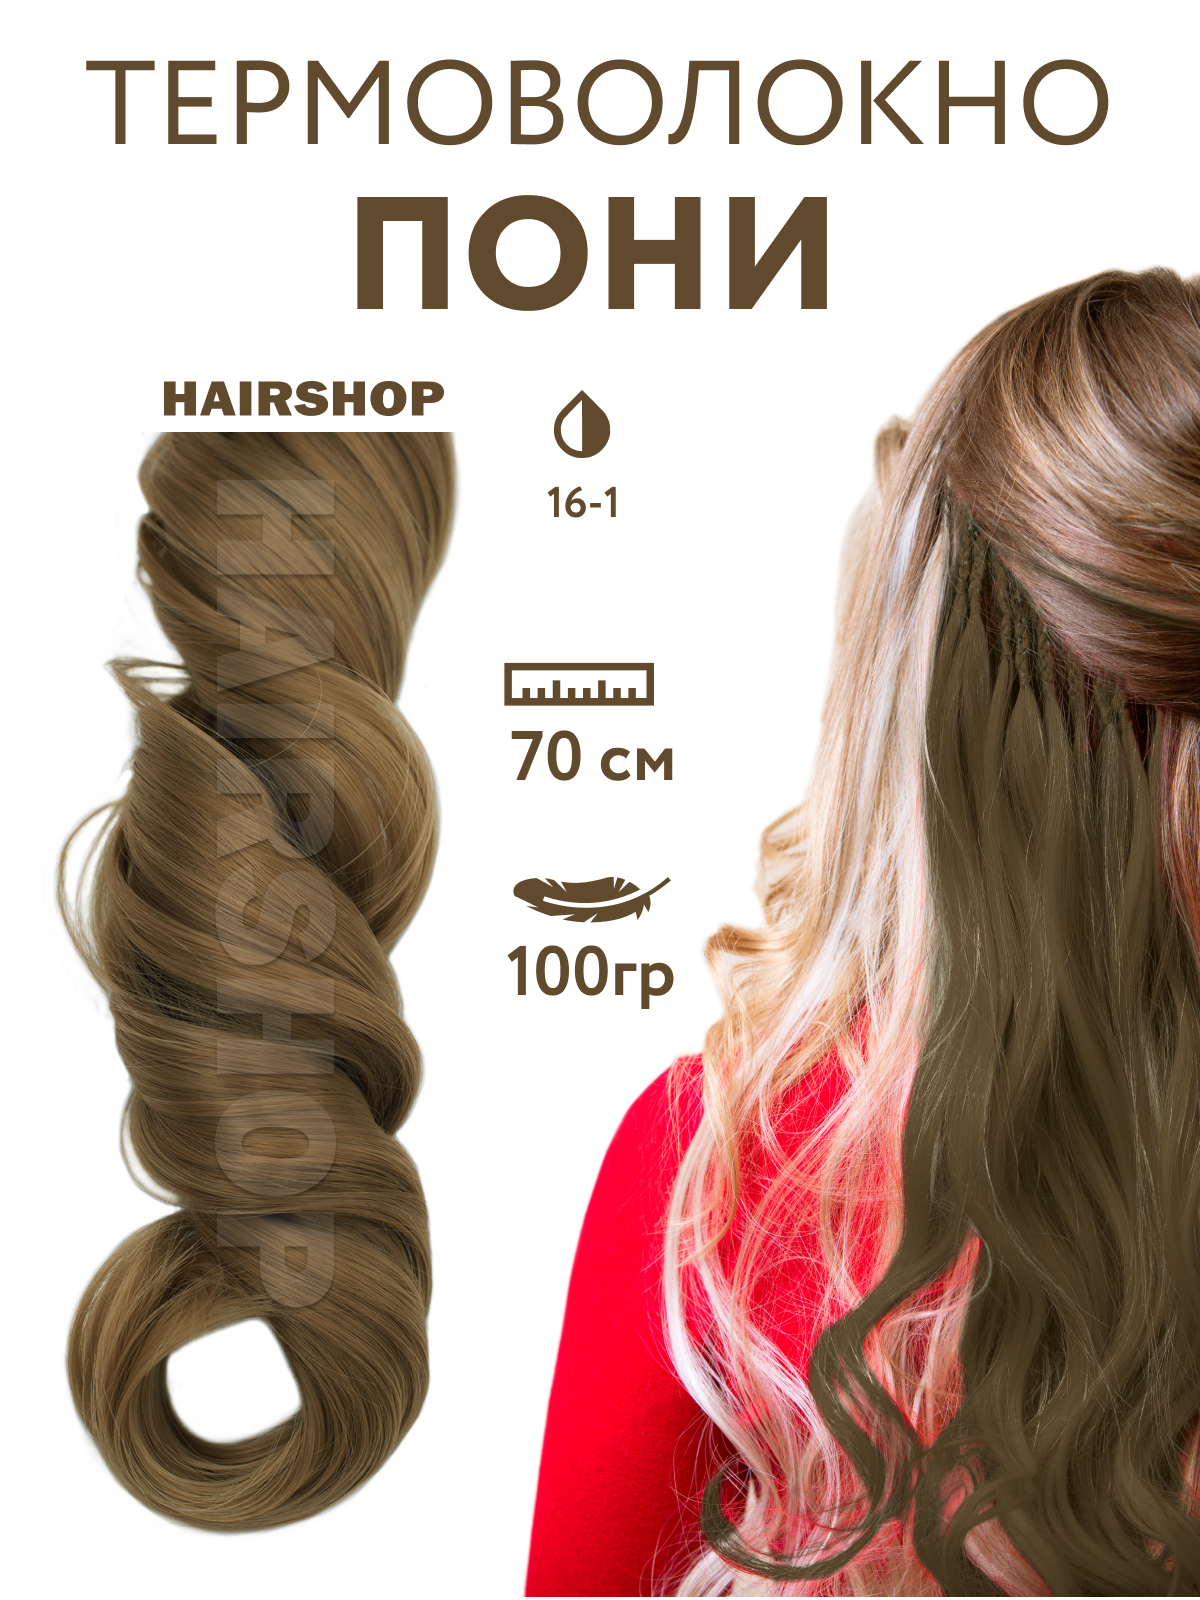 Канекалон Hairshop Пони HairUp для точечного афронаращивания 16-1 Пепельно-русый 1,4м канекалон hairshop пони hairup для точечного афронаращивания о1 персик пастельный 1 4м